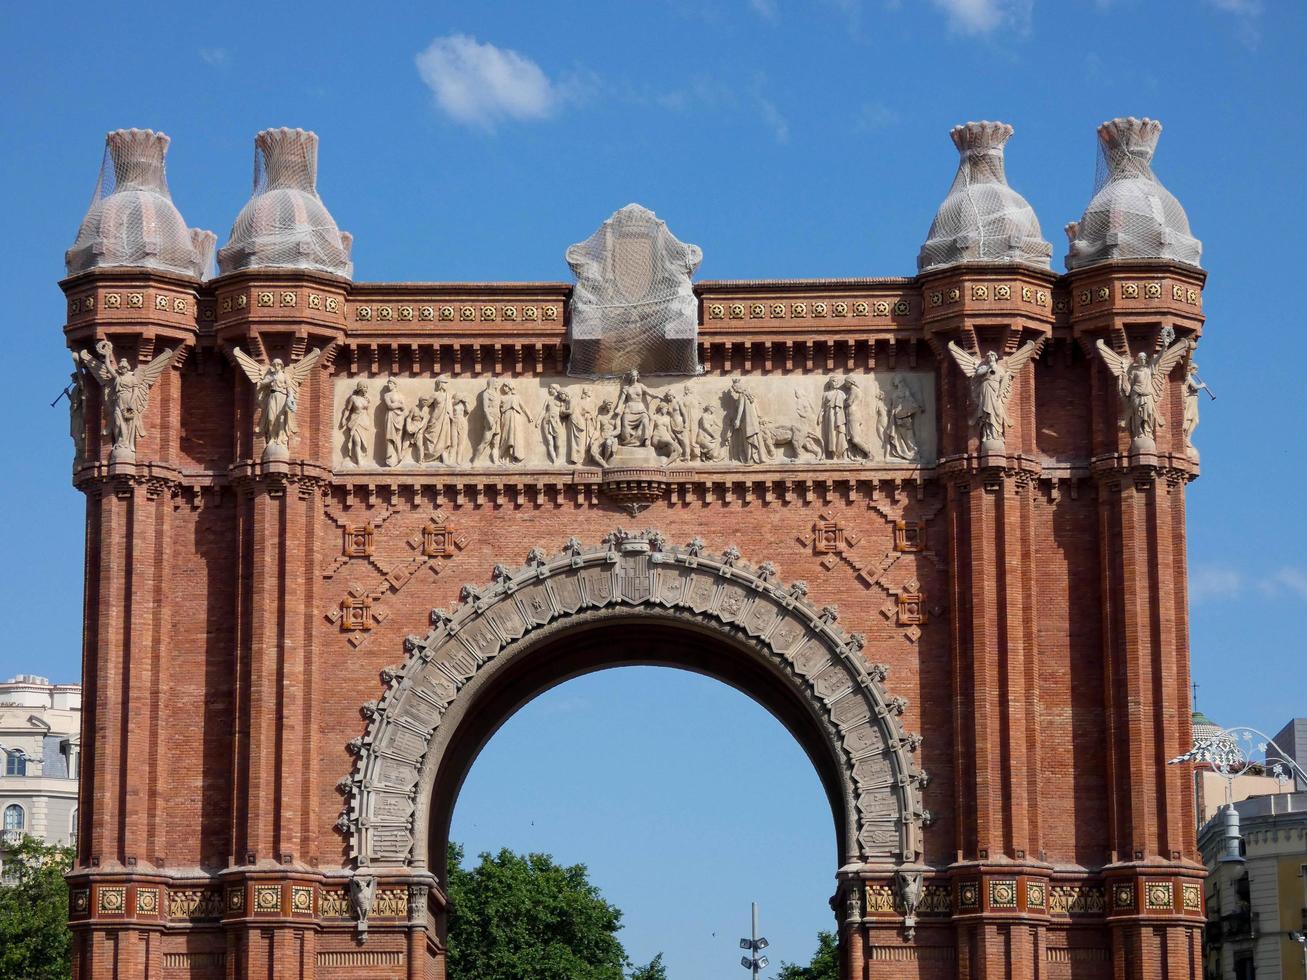 arco triunfal em barcelona, edifício moderno em tijolo vermelho foto